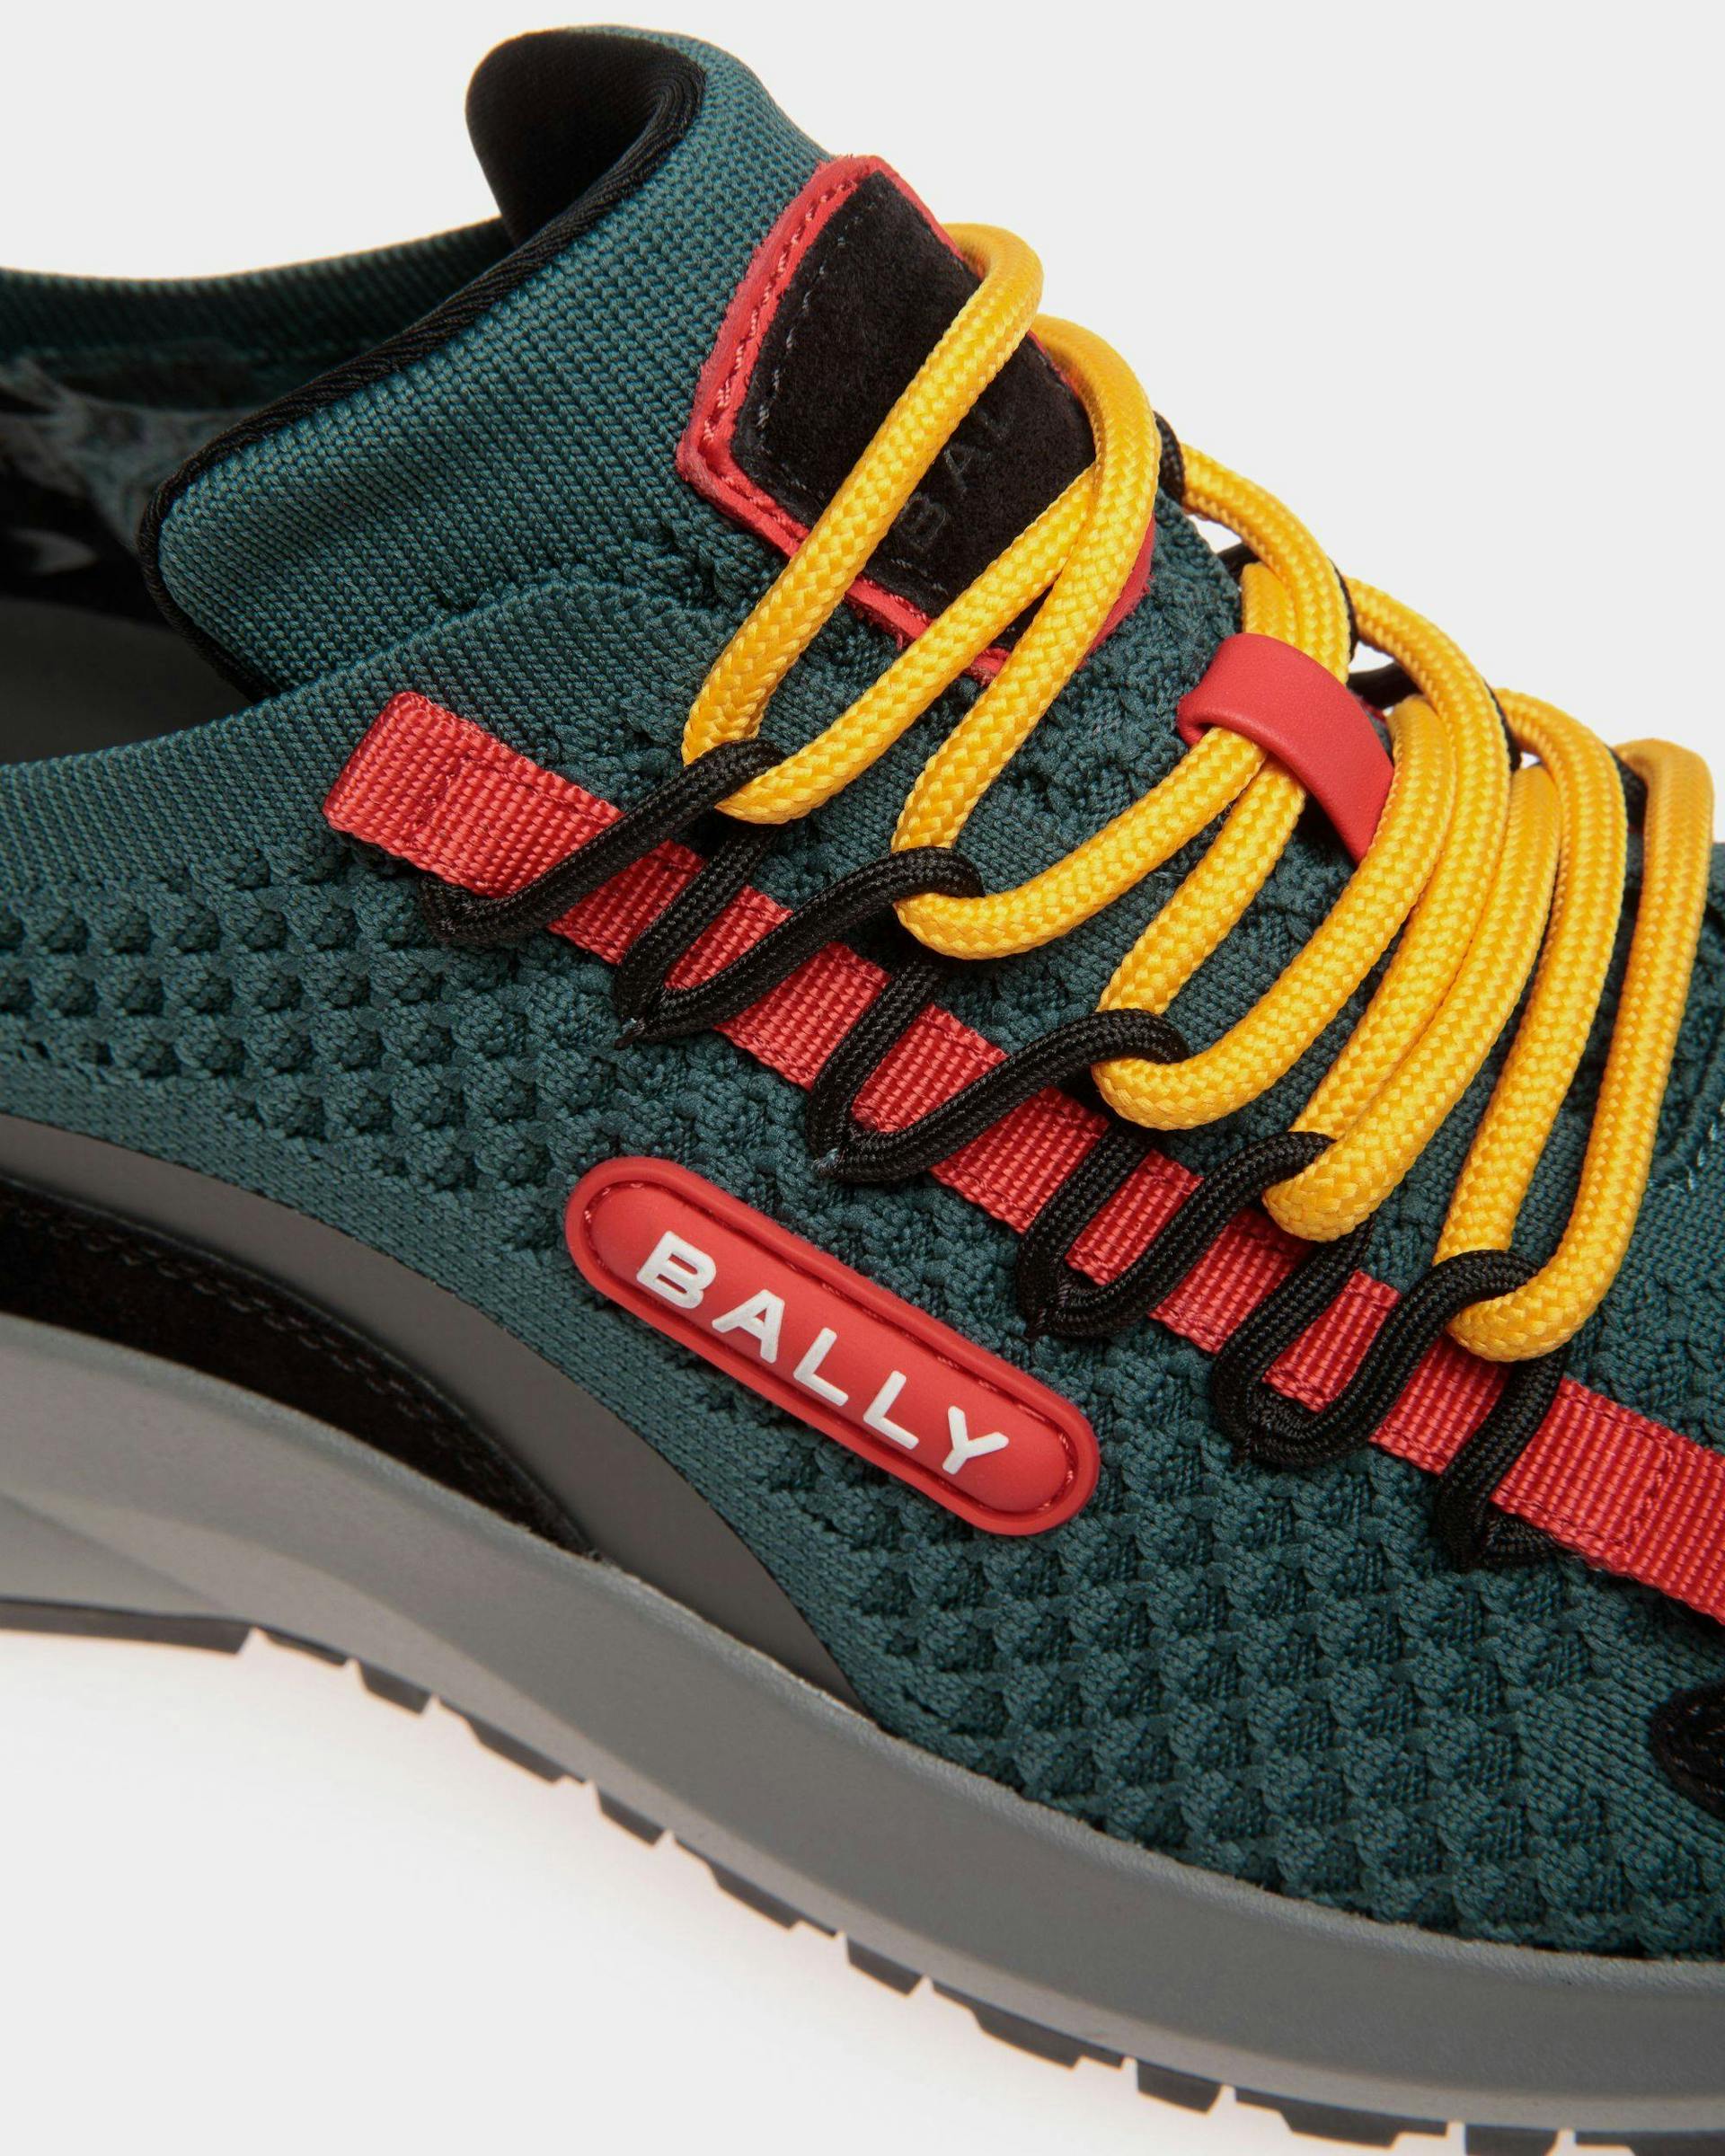 Men's Outline Sneaker in Knit | Bally | Still Life Detail